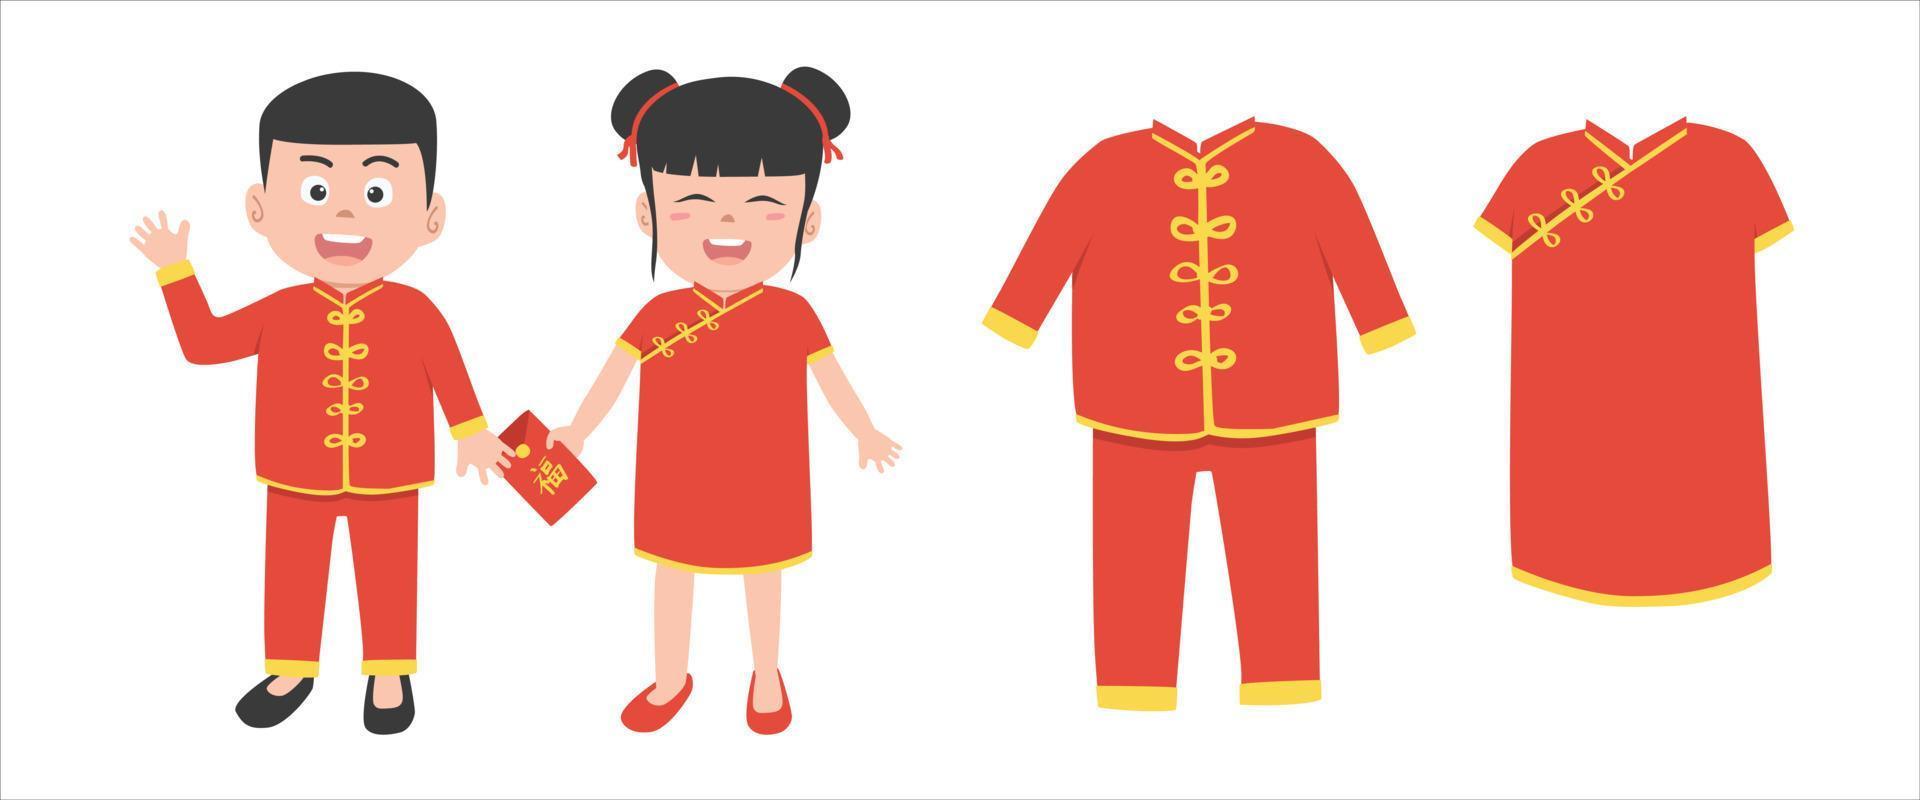 vektor uppsättning av kinesisk ny år kläder ClipArt. söt kinesisk pojke och flicka i röd traditionell kläder platt vektor illustration tecknad serie. röd kuvert text betyder Bra tur. asiatisk lunar ny år begrepp